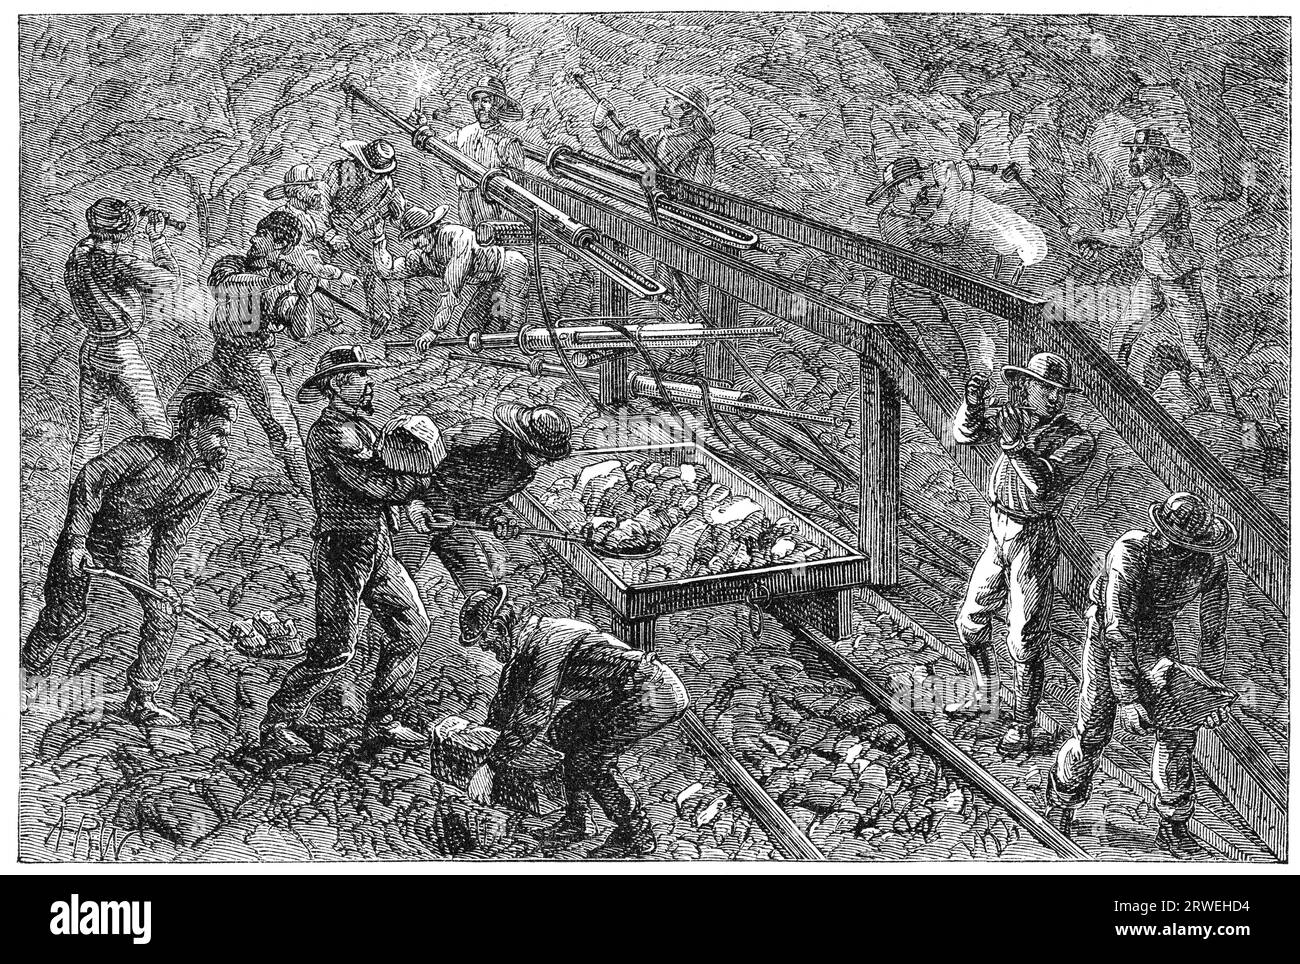 Tunneln des Hoosac-Tunnels: Arbeiten Sie auf dem Steuerkurs. Illustration aus einem 1870 gedruckten Magazin Stockfoto